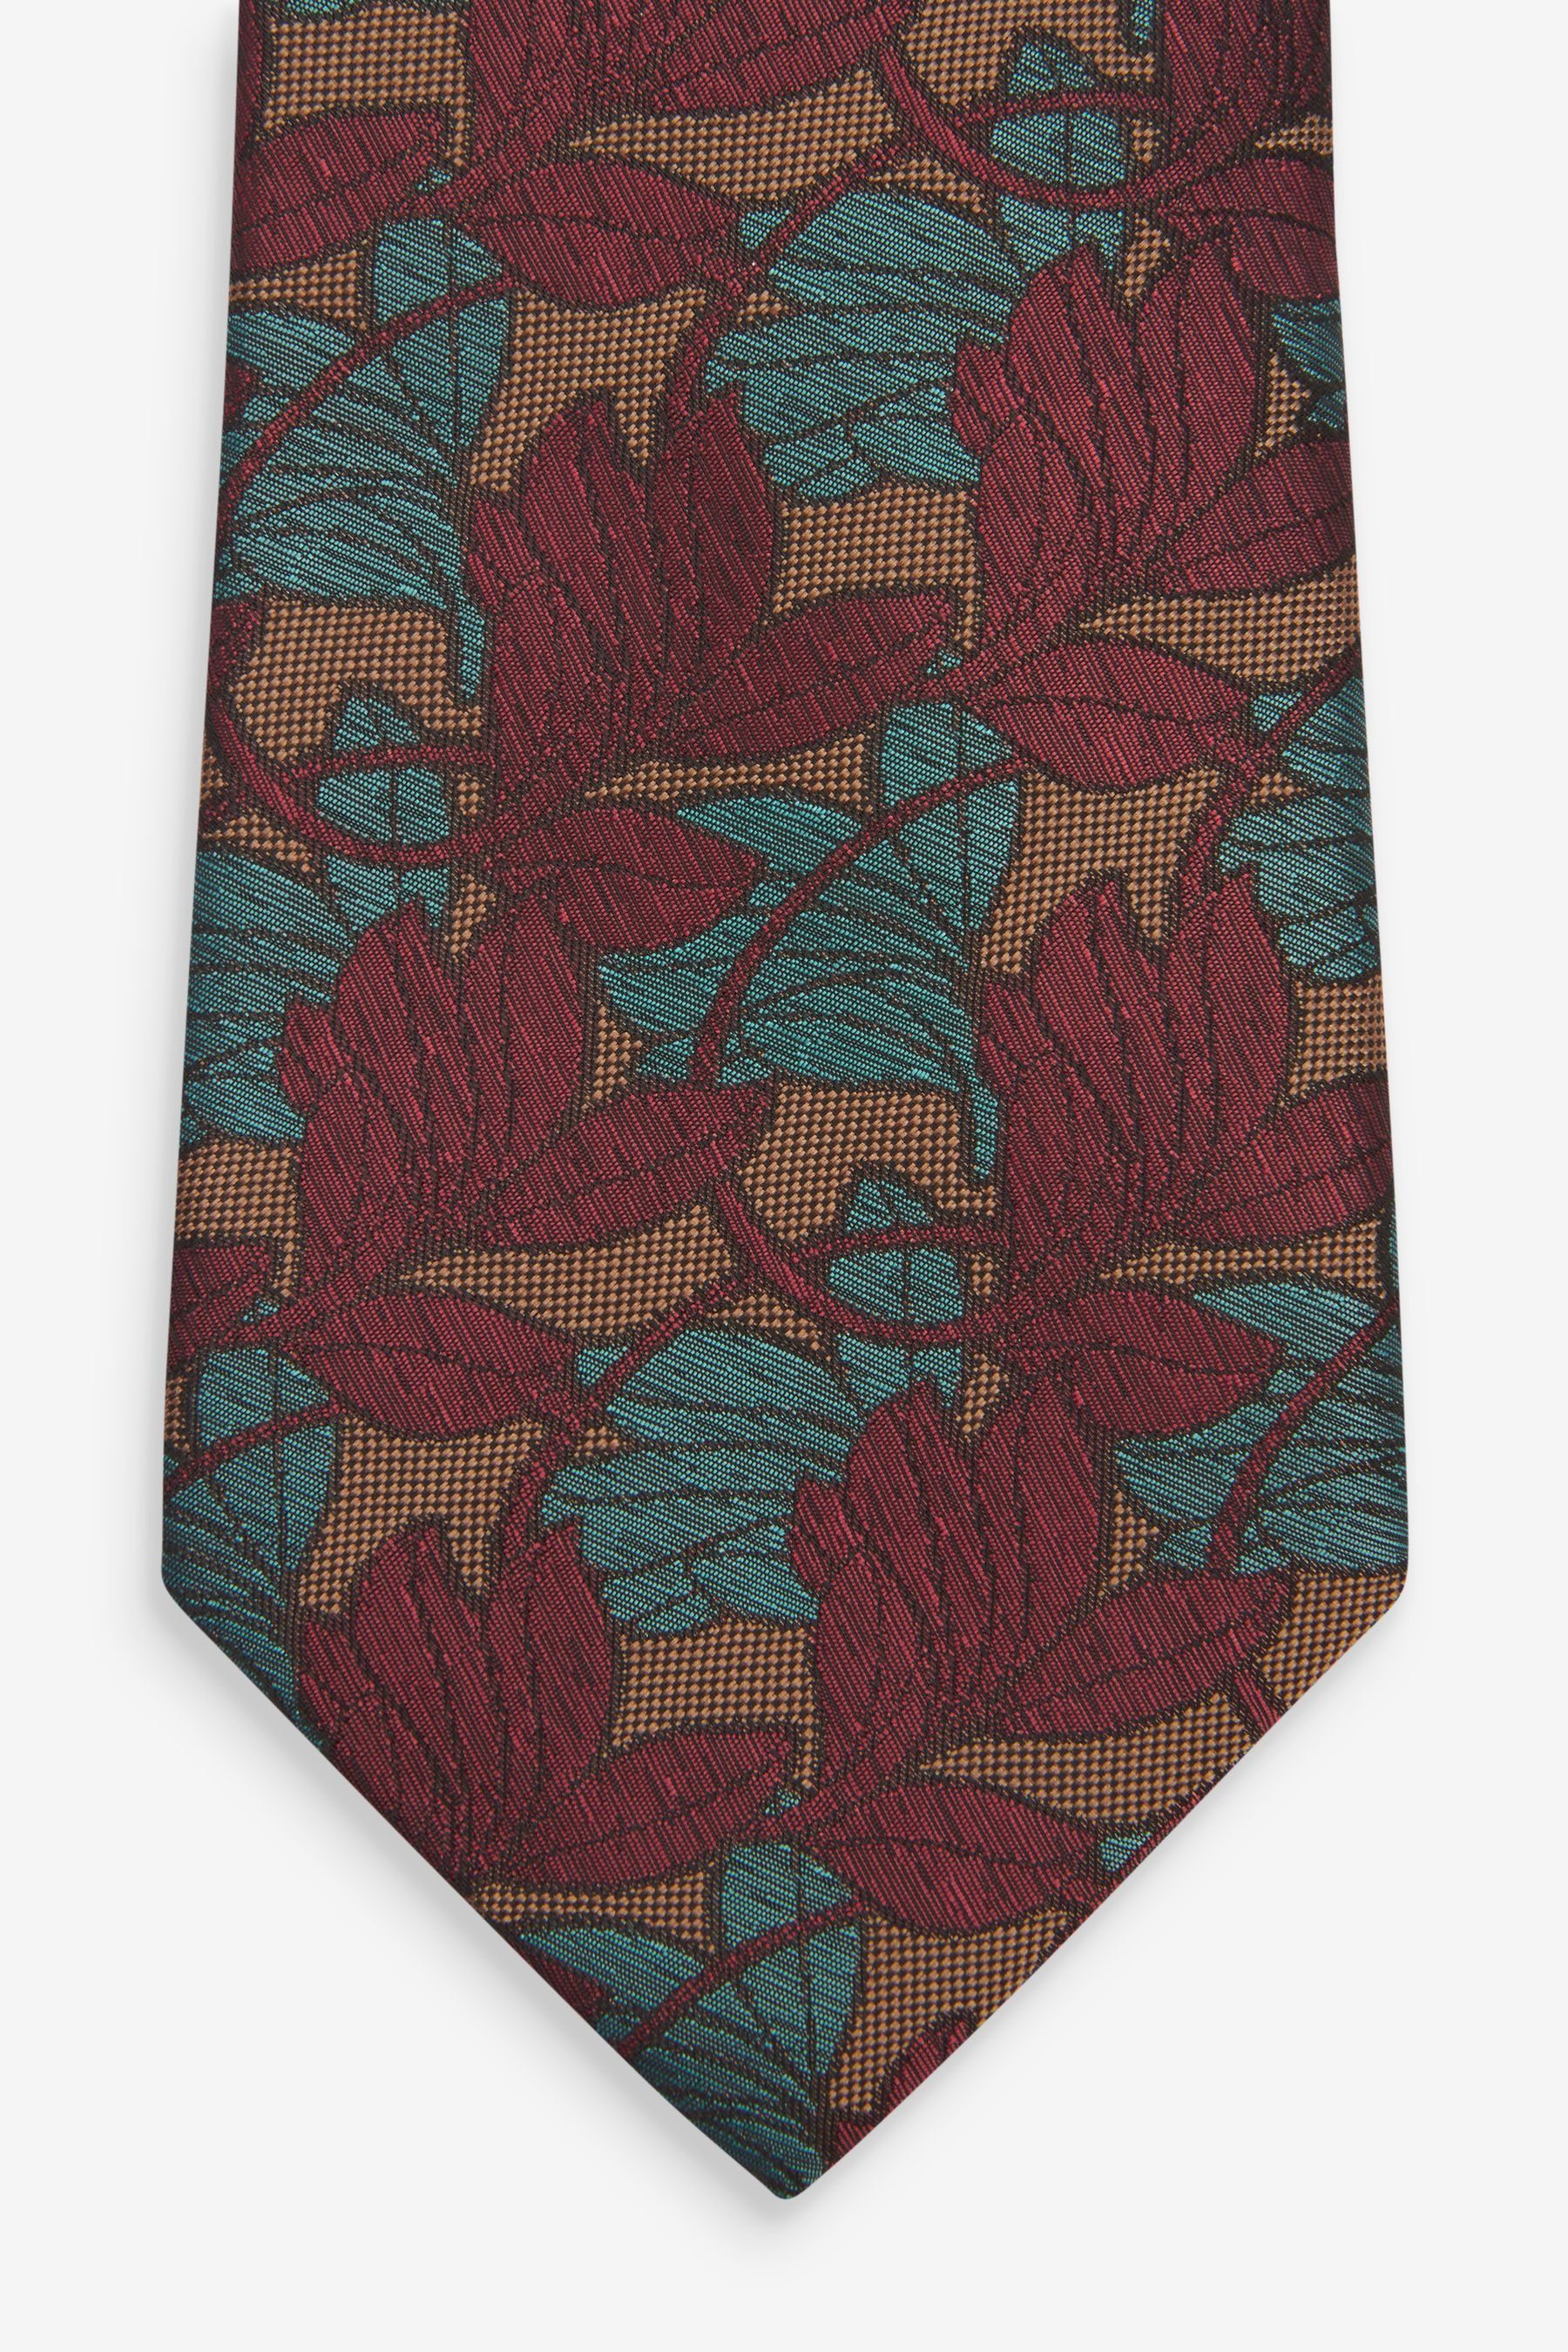 (1-St) Krawatte Next Blue Leaf Gemusterte Krawatte Teal Large